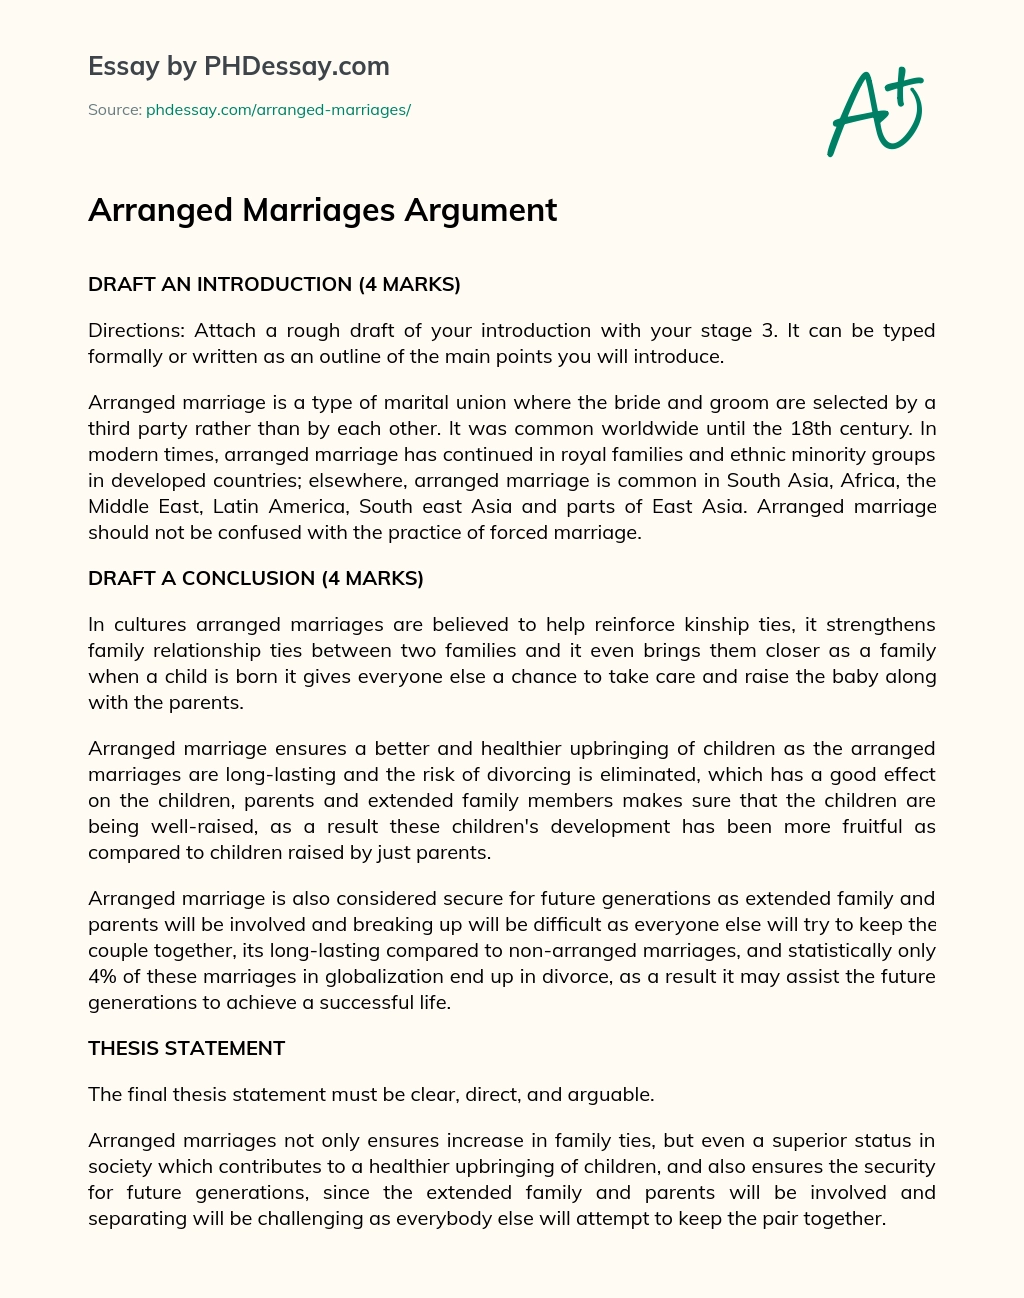 Arranged Marriages Argument essay